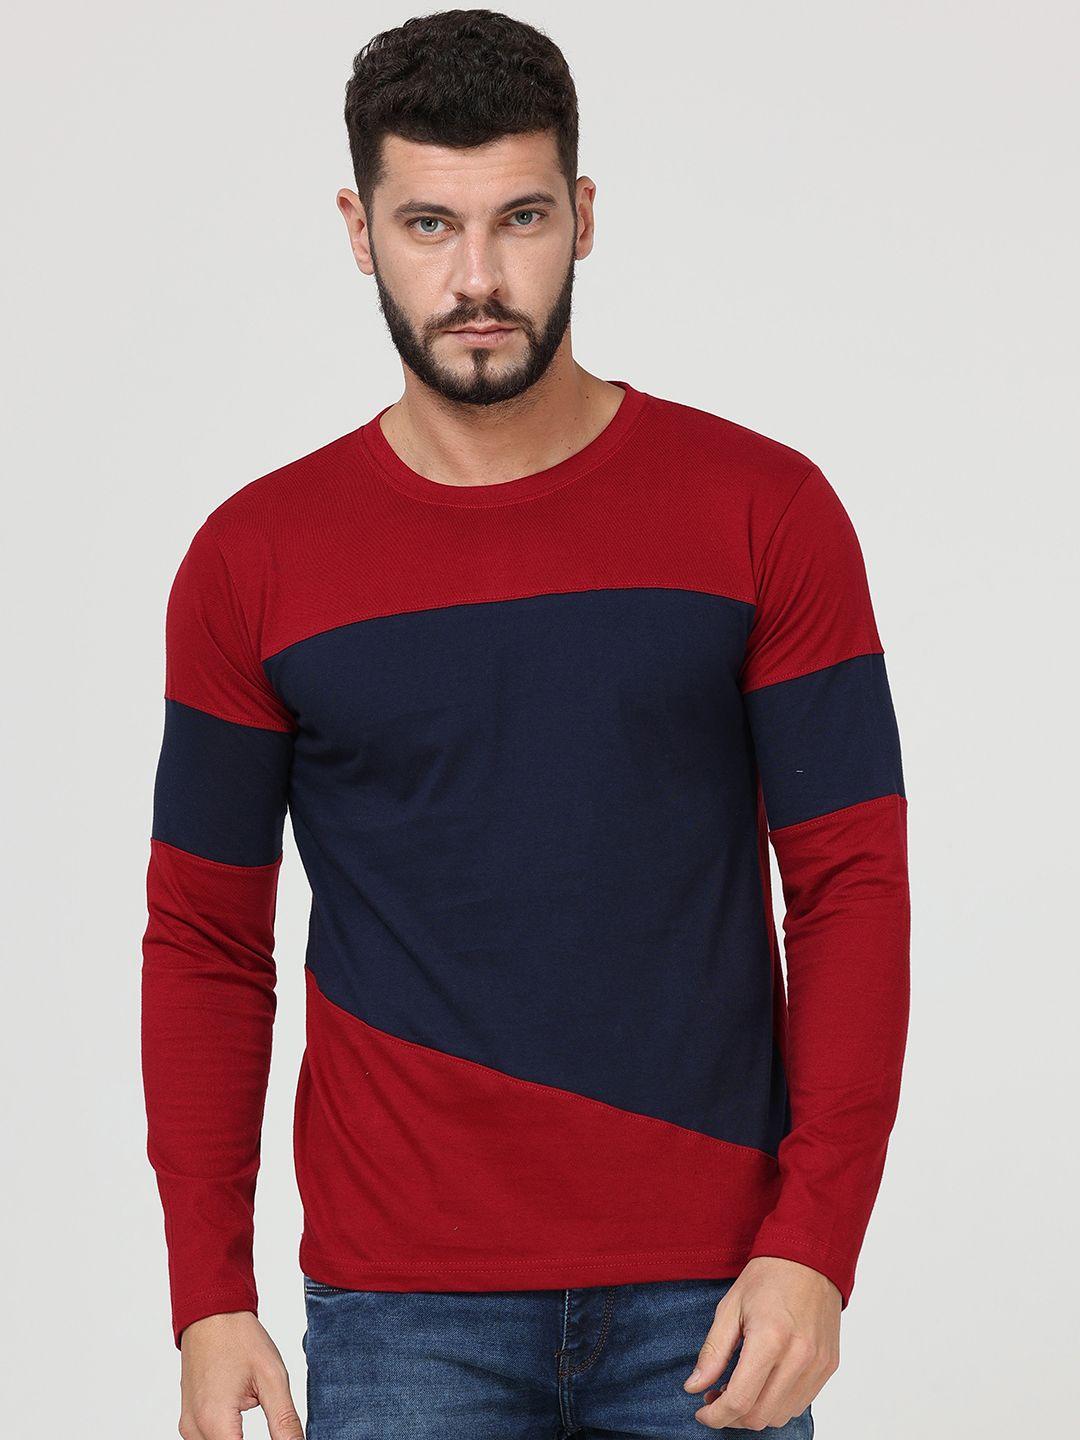 fleximaa men red & navy blue colourblocked regular fit t-shirt